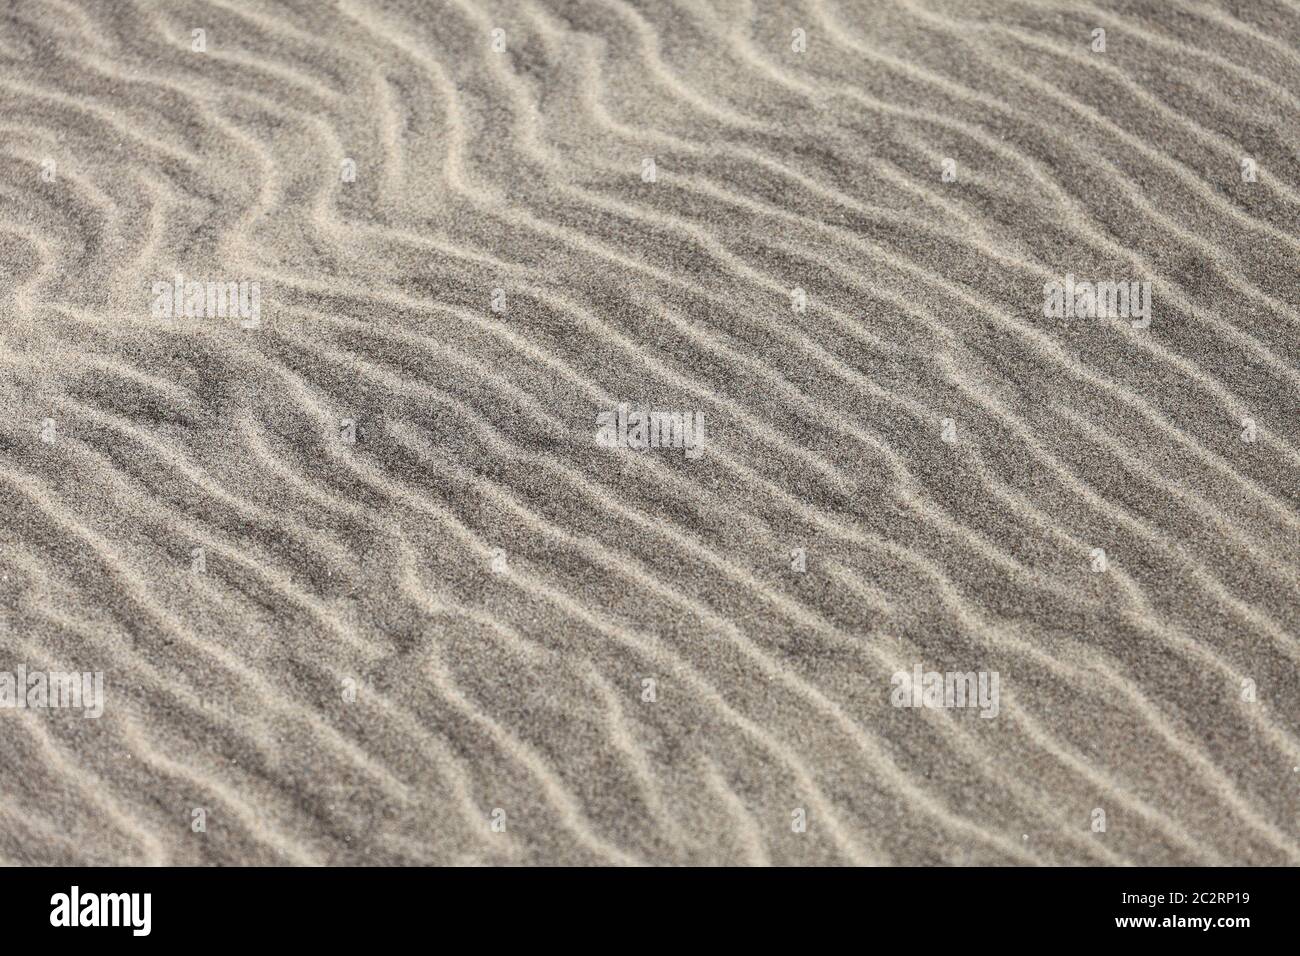 Il motivo delle increspature è visto nella sabbia su una spiaggia. Foto Stock